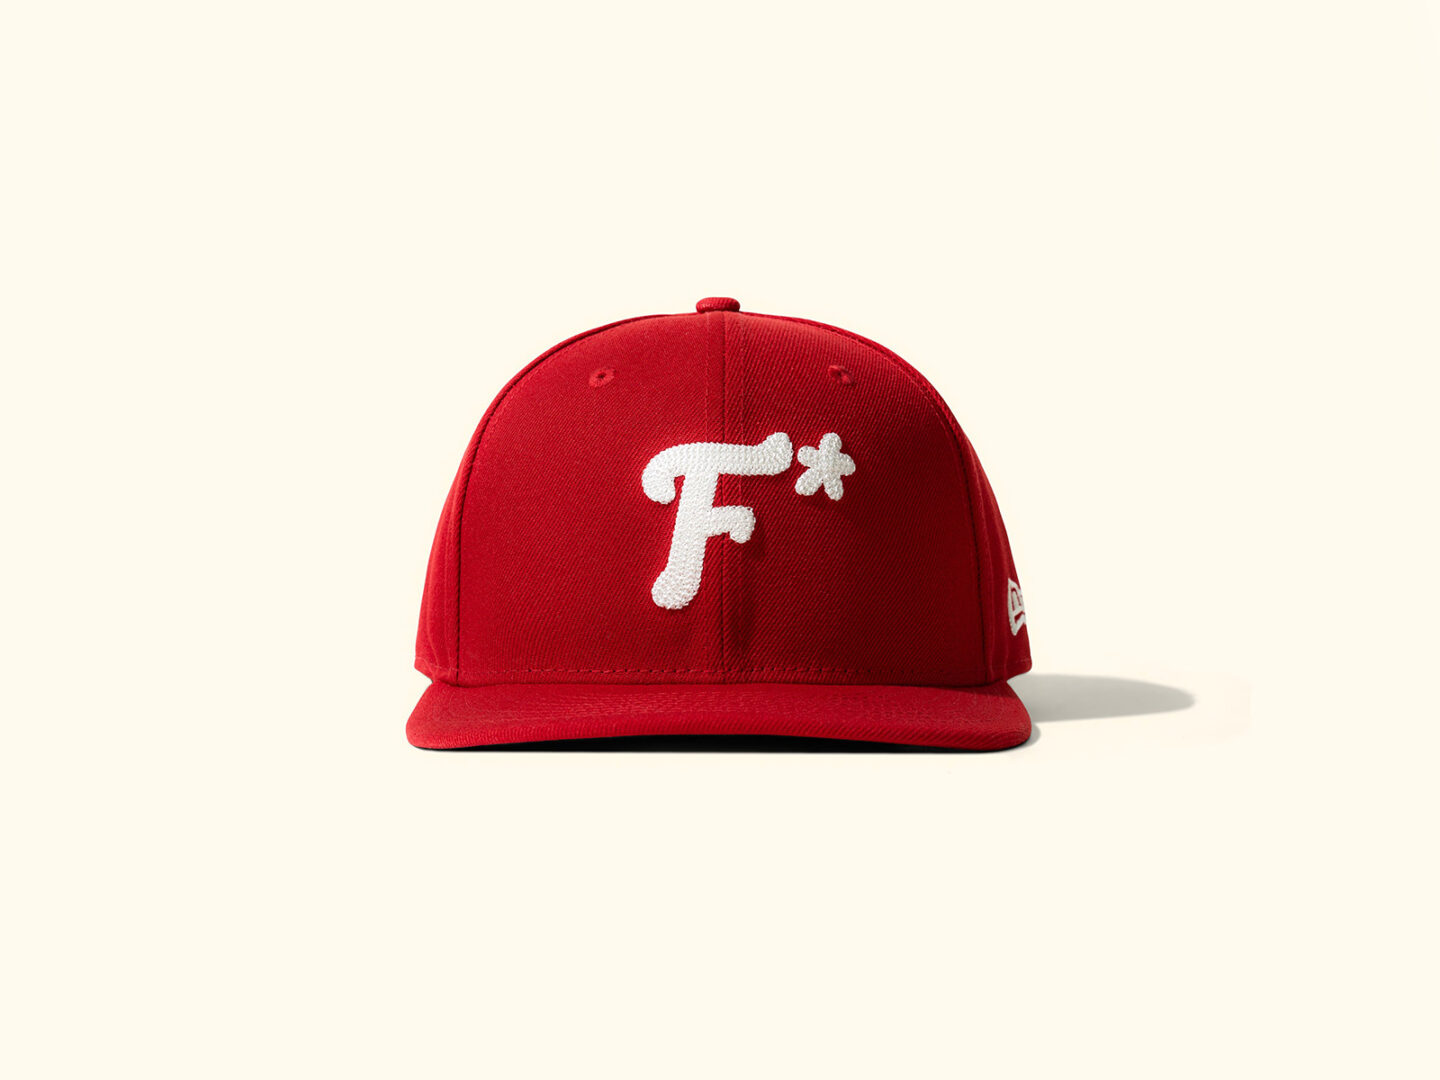 GOLF Le FLEUR* se une a New Era para ofrecer gorras exclusivas